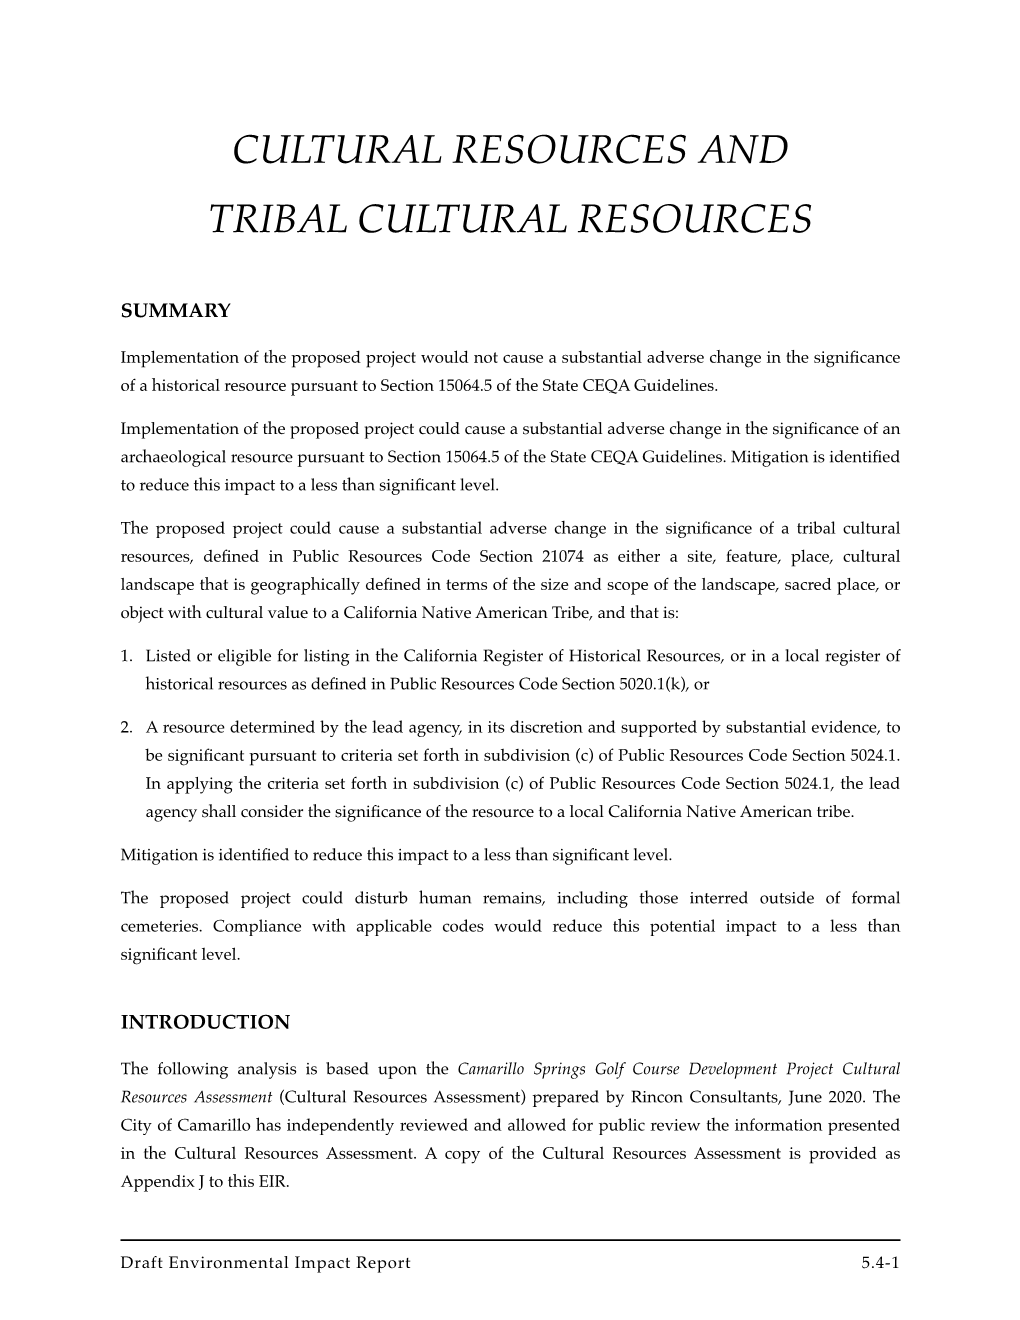 5.4 Cultural Resources